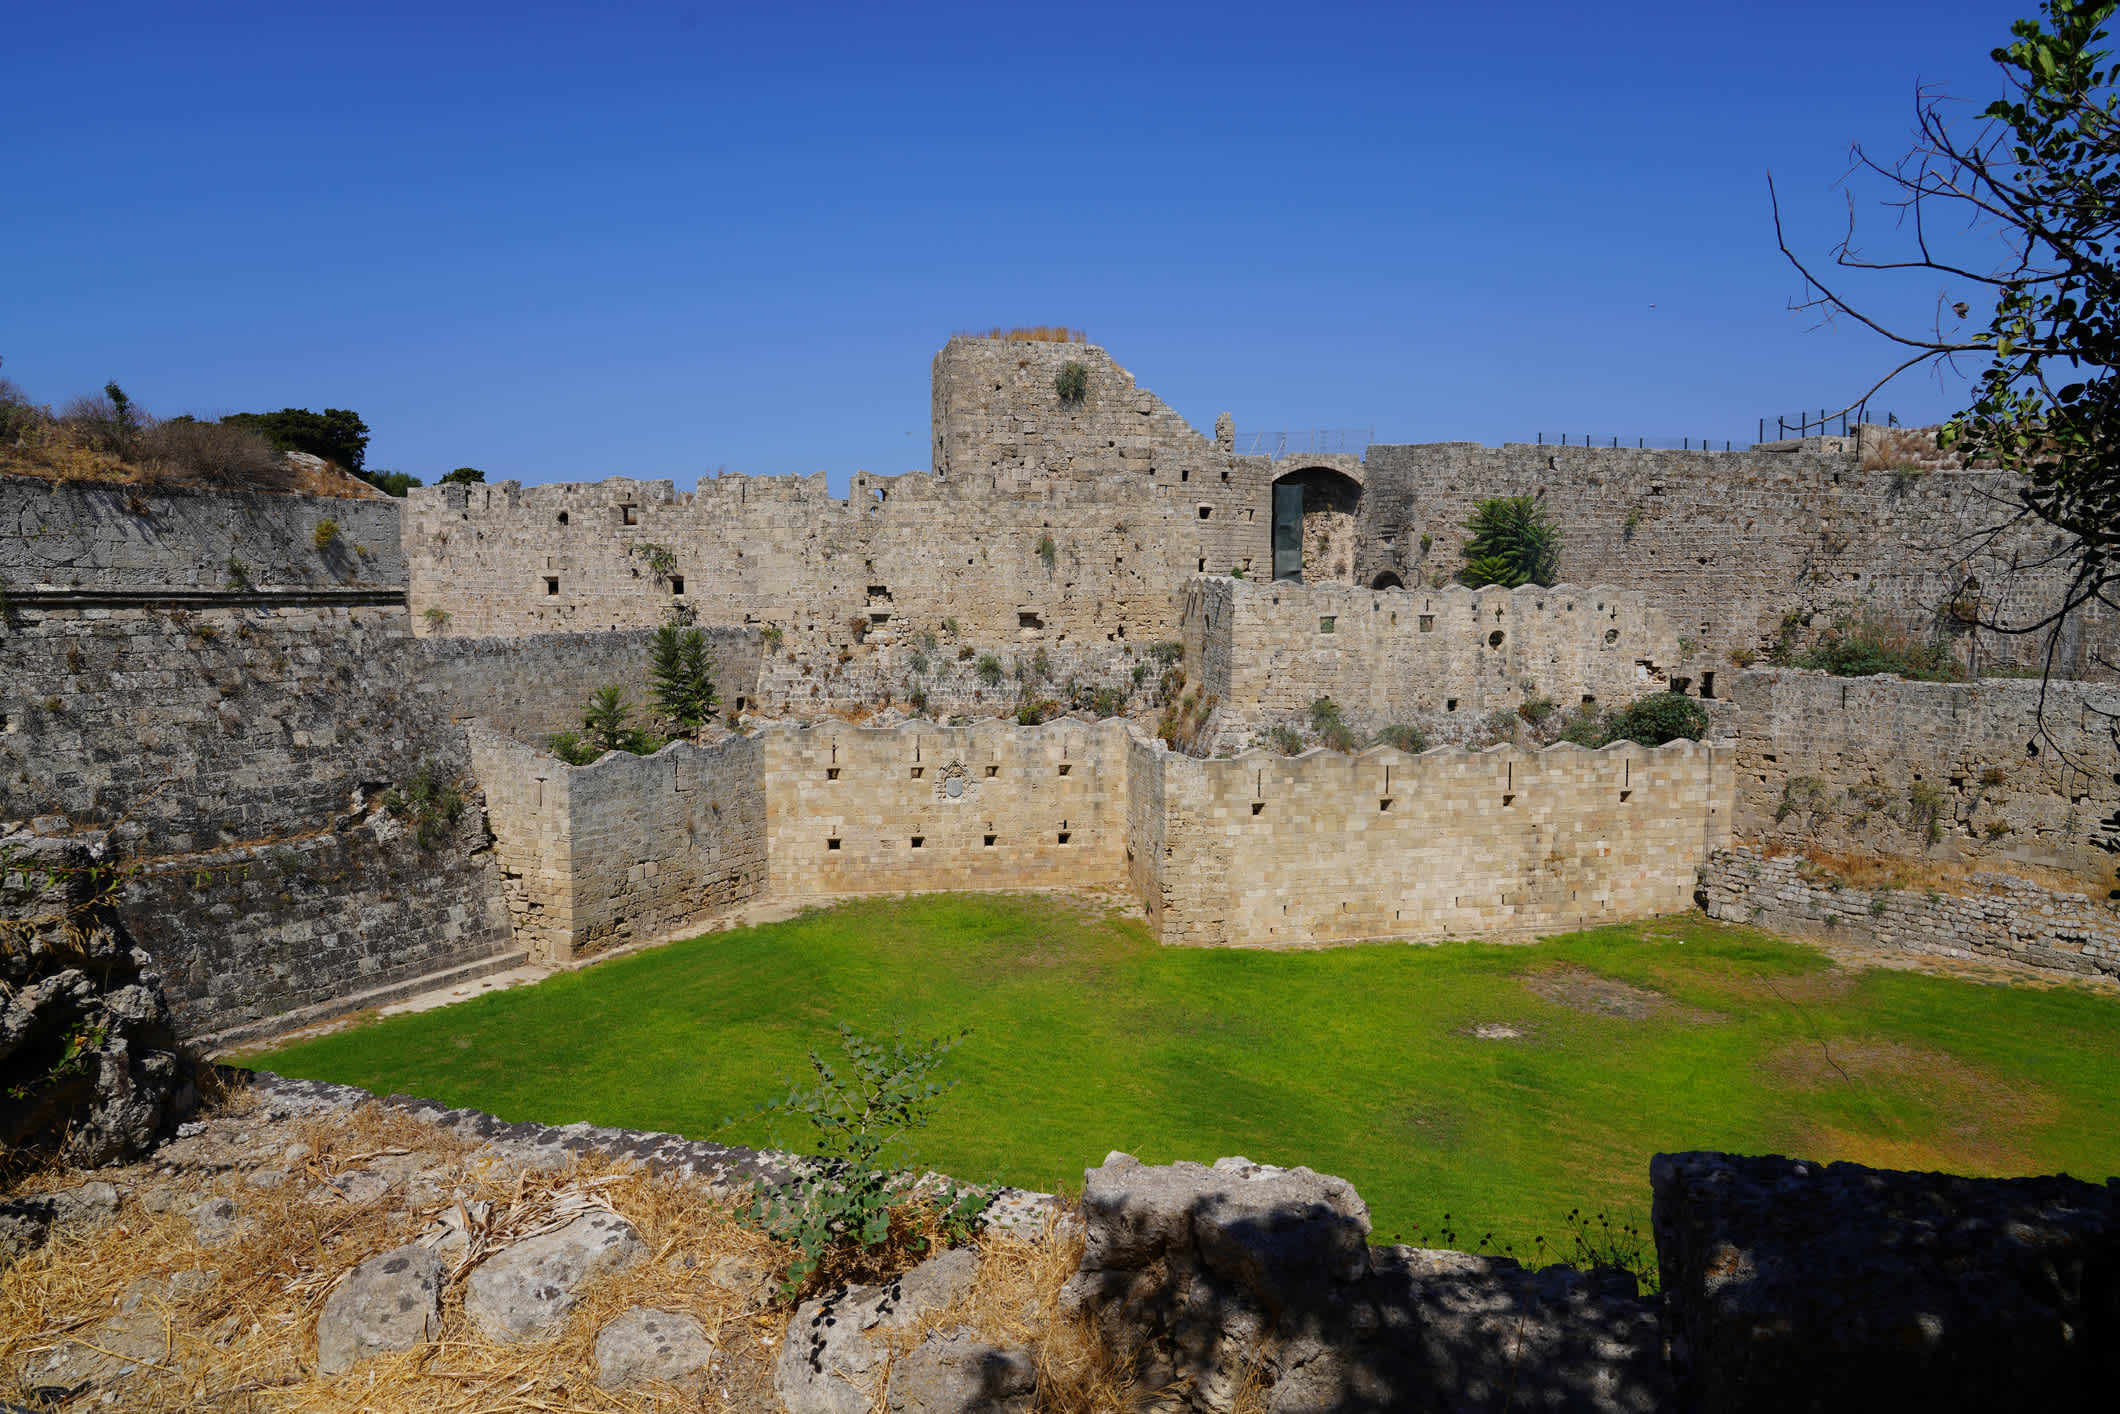 Der Blick auf den Stadtmauern der Altstadt von Rhodos, Griechenland

